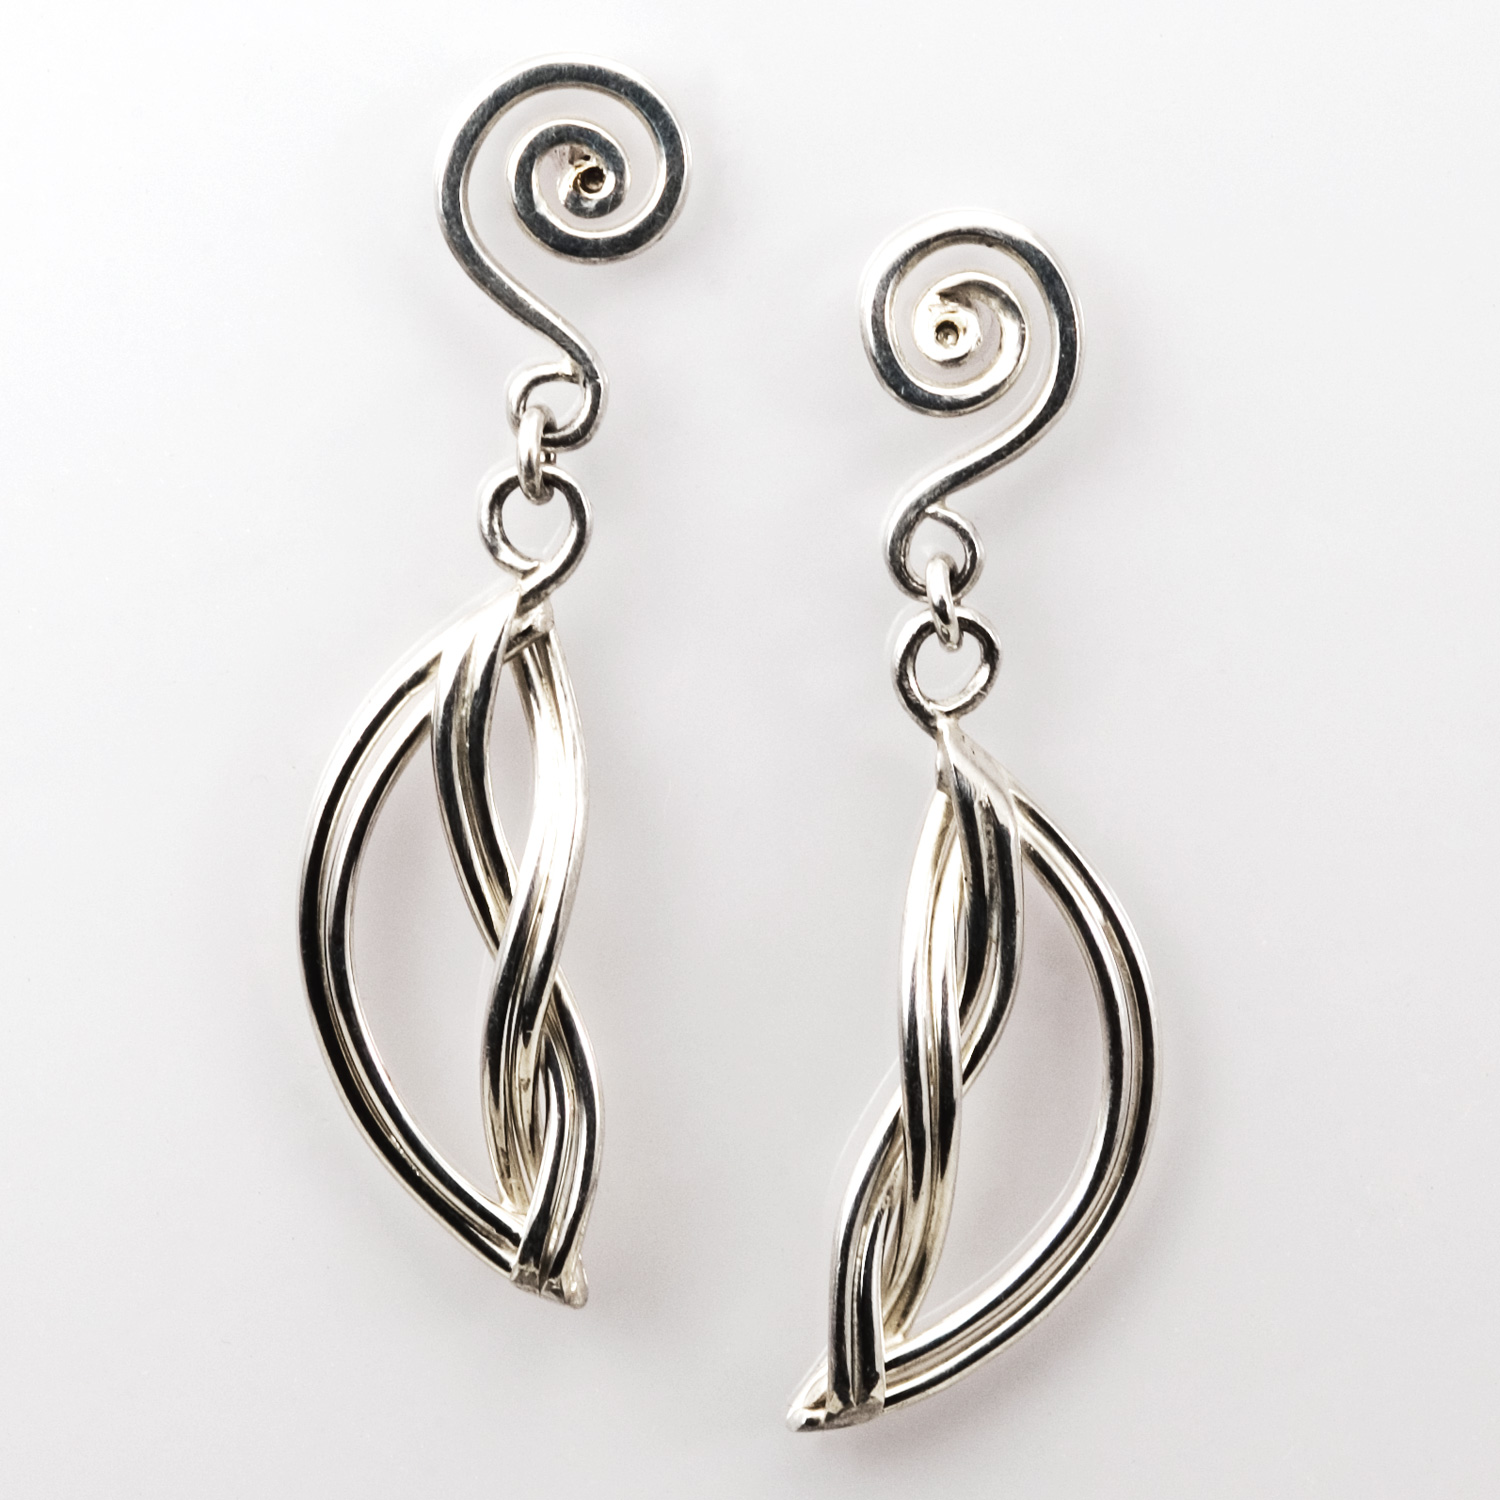 Ocean Waves Earrings in sterling silver by Tamberlaine